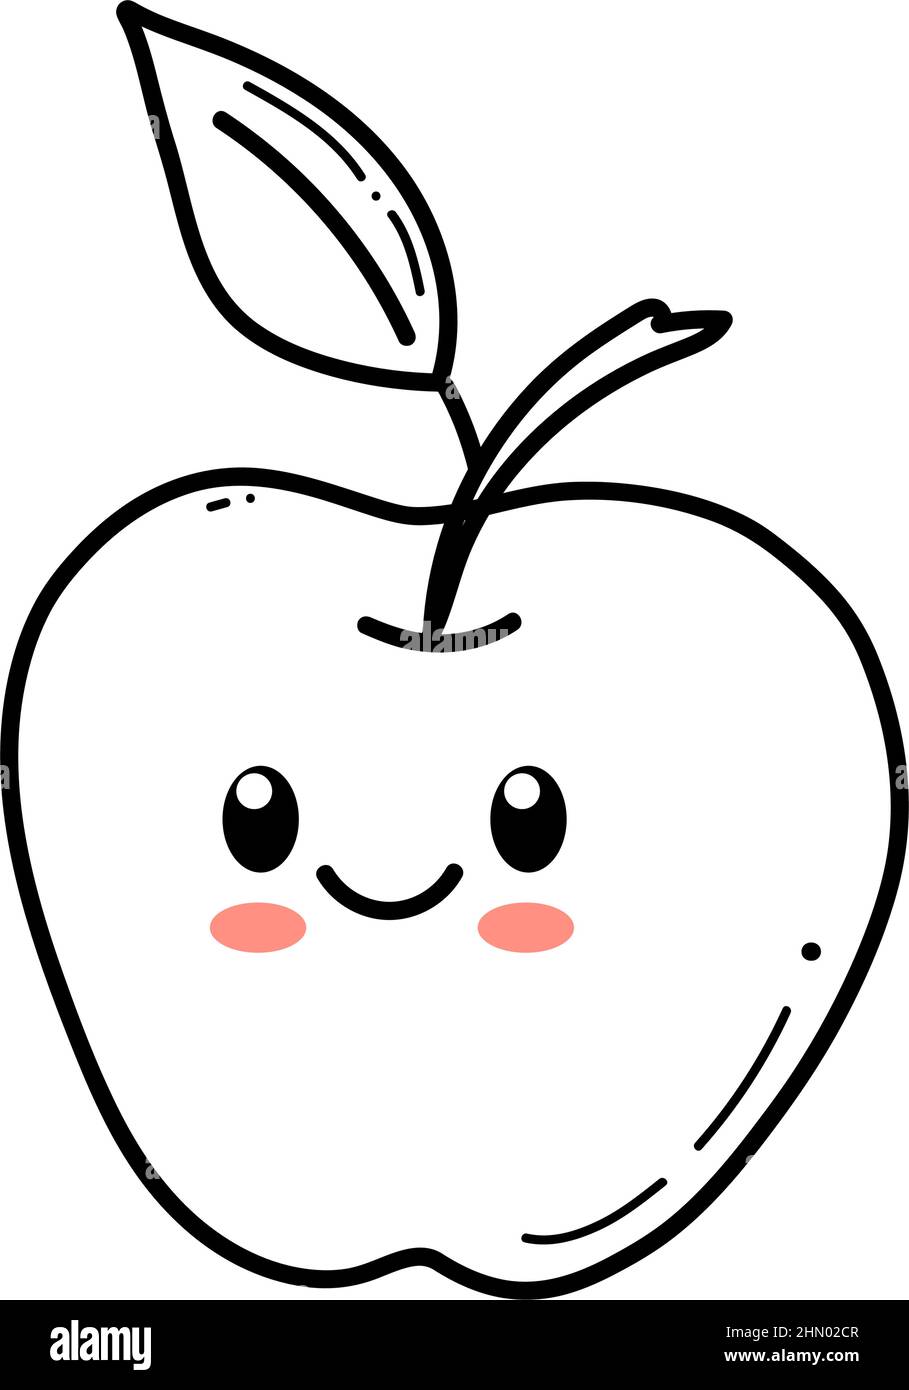 Personnage de pomme au visage amusant.Bonne jolie illustration de vecteur de pomme de dessin animé.Nourriture végétarienne saine caractère isolé des enfants Illustration de Vecteur